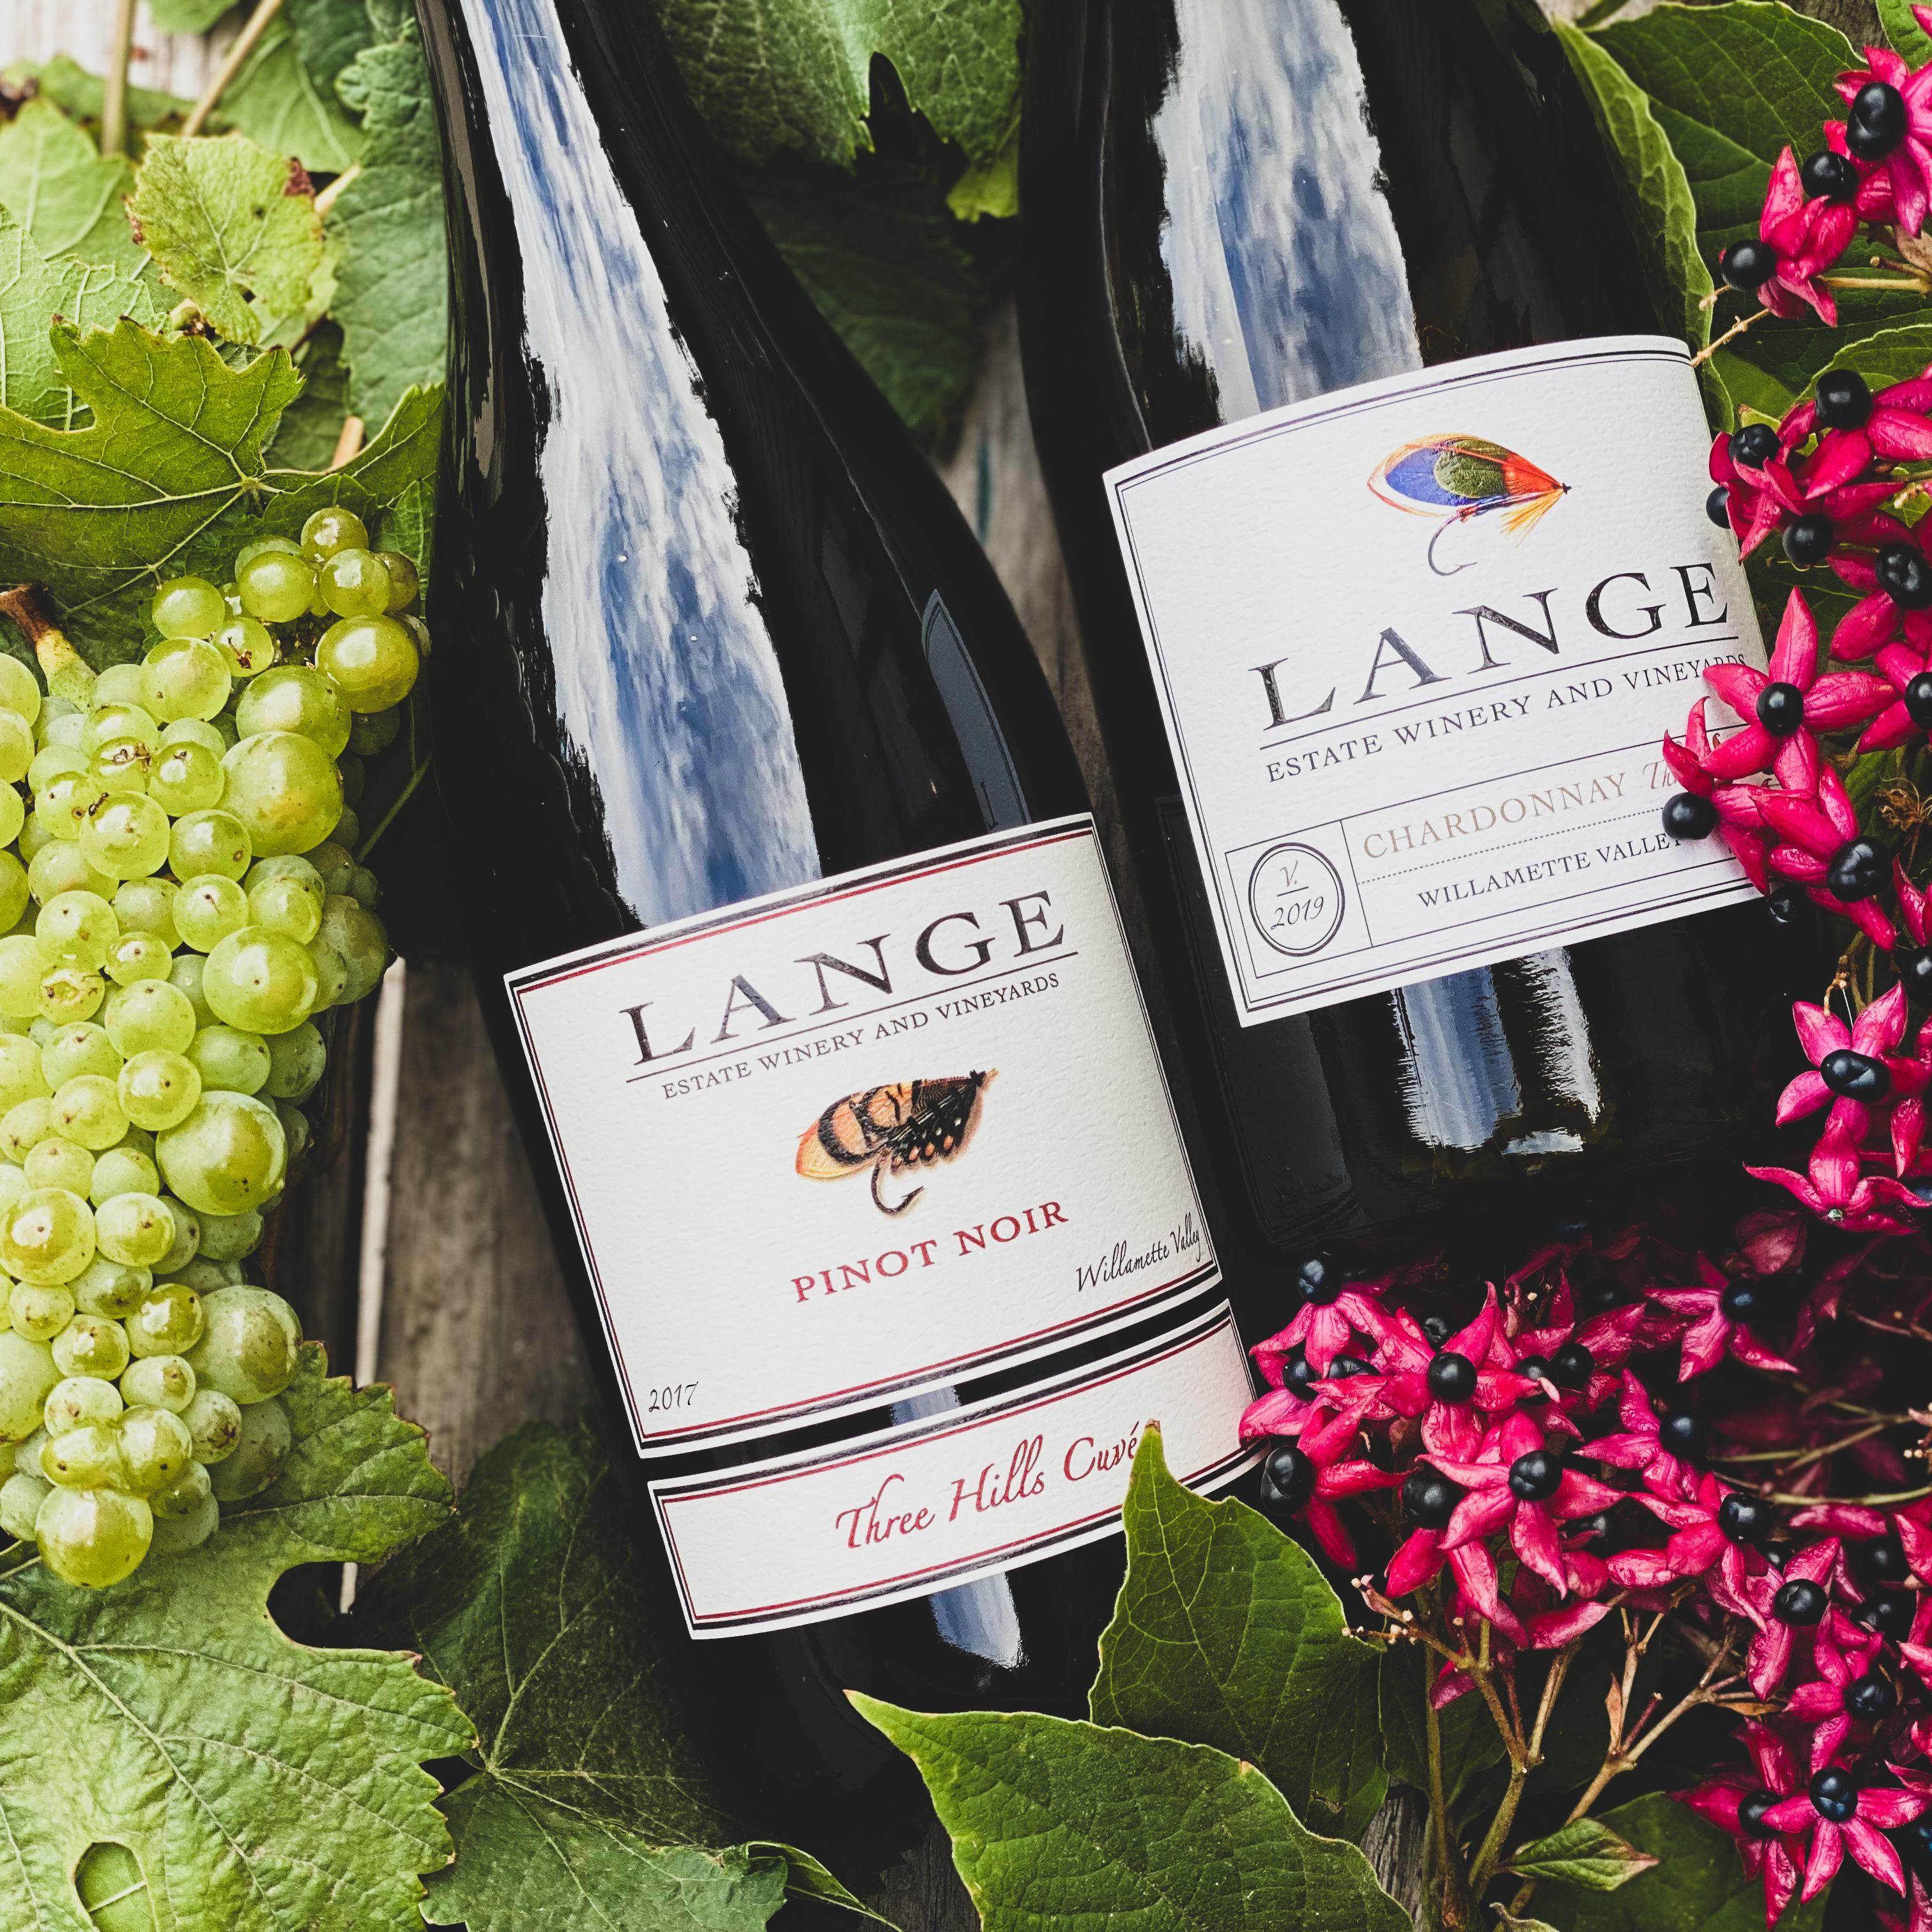 Image for Lange Estate Winery Vineyards